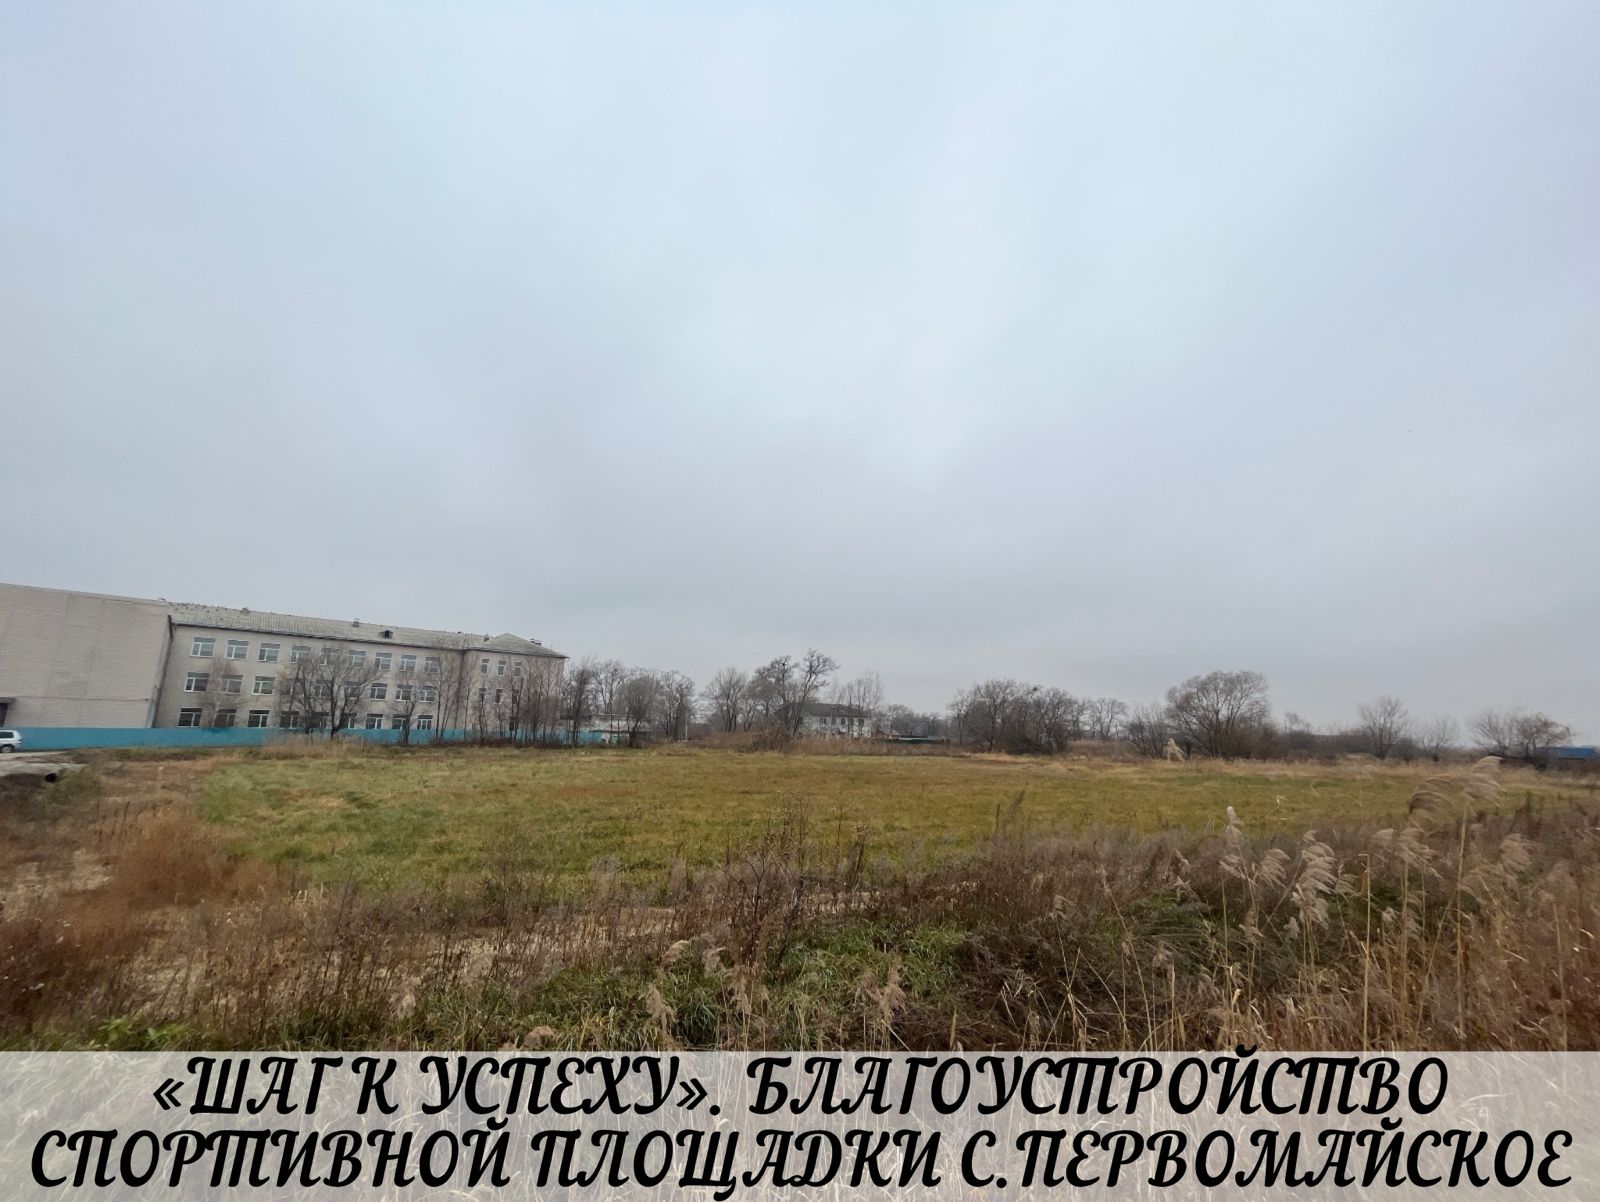 Реализация общественно-значимых проектов планируется на территории Михайловского района. Инициативное бюджетирование.